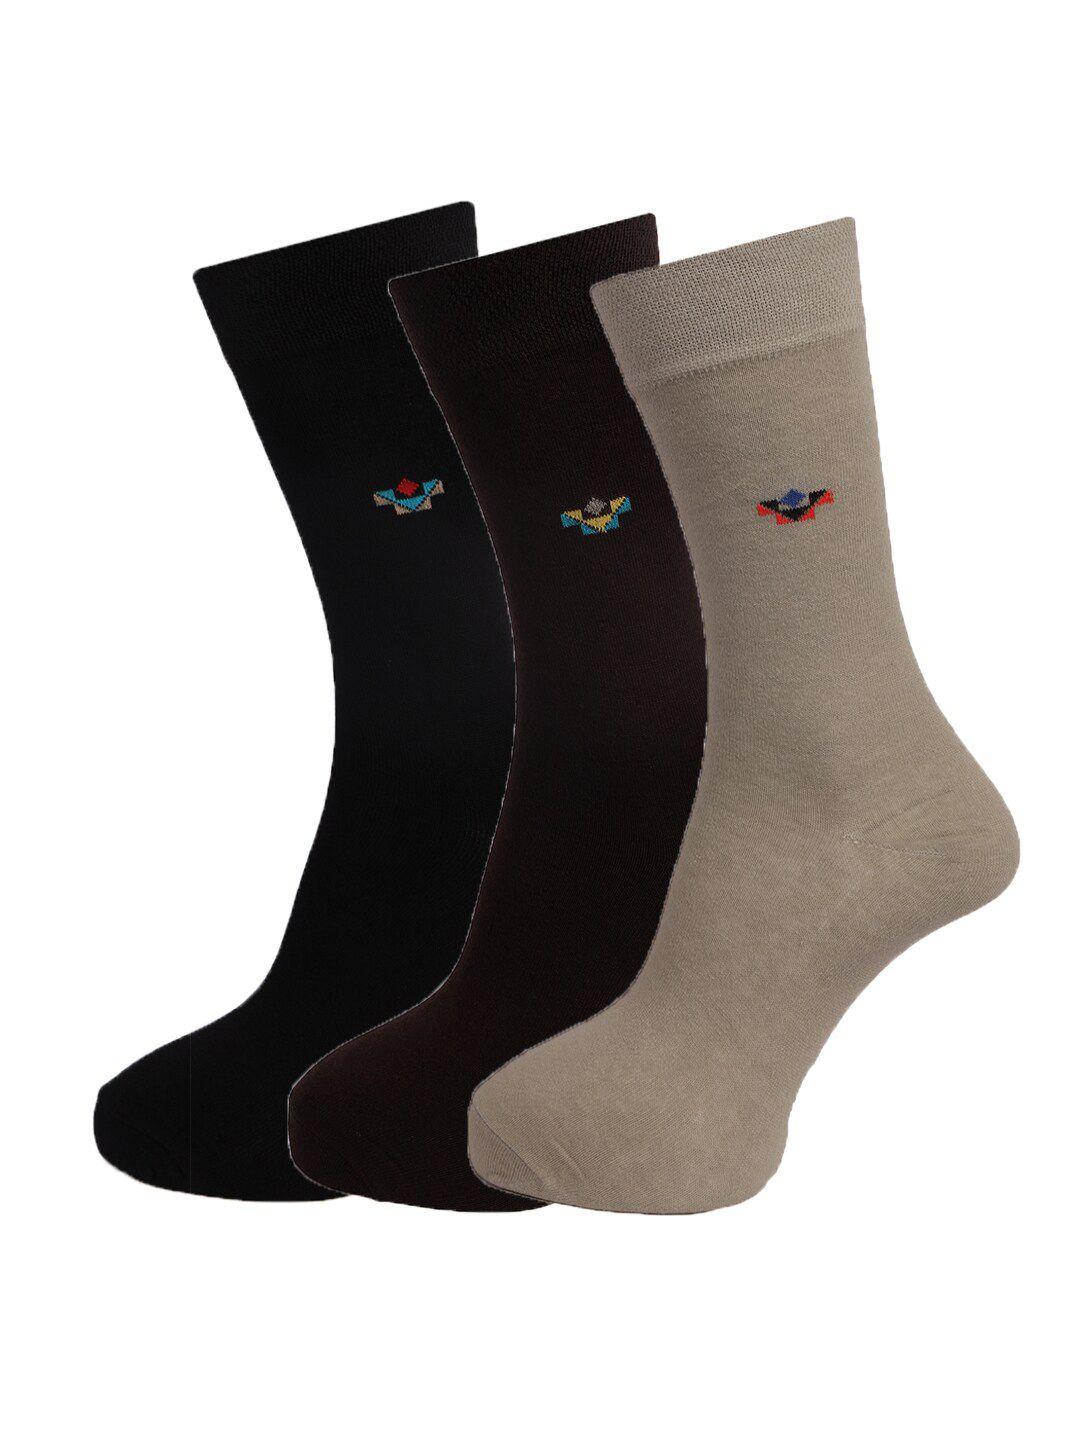 dollar-socks-men-pack-of-3-assorted-calf-length-cotton-socks